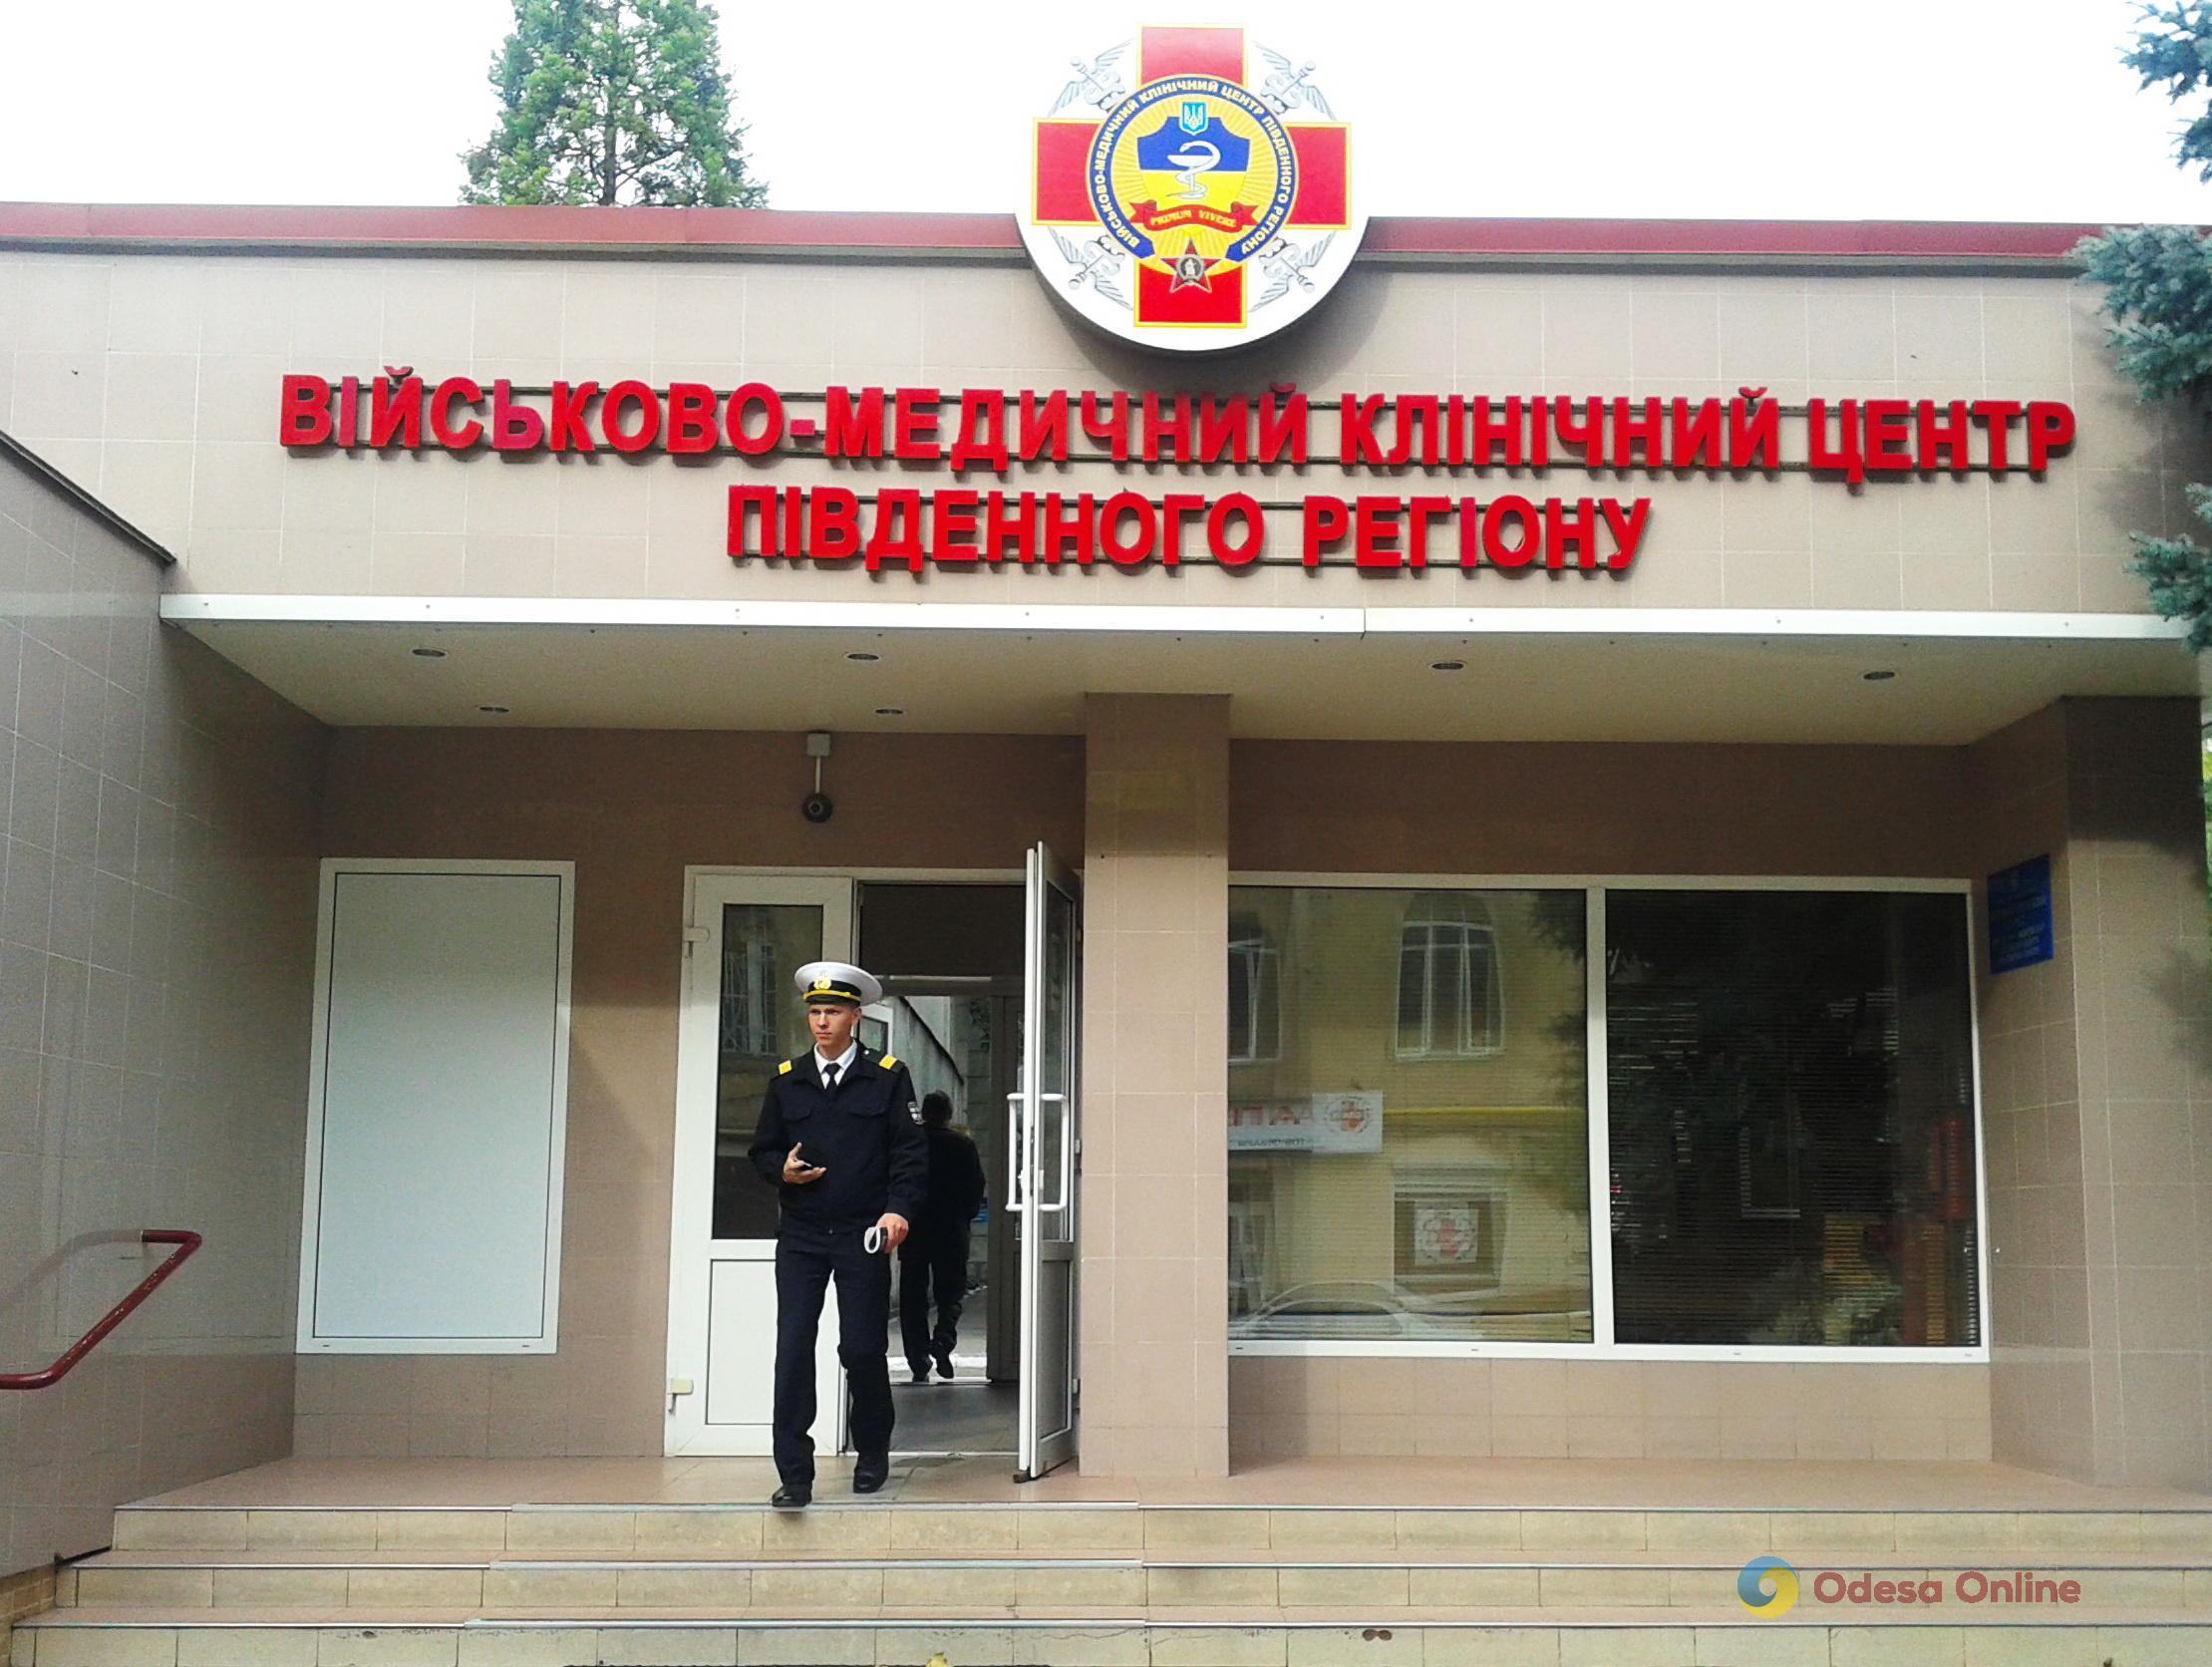 Малый герб Одессы появится на нарукавной эмблеме Военно-медицинского клинического центра Южного региона